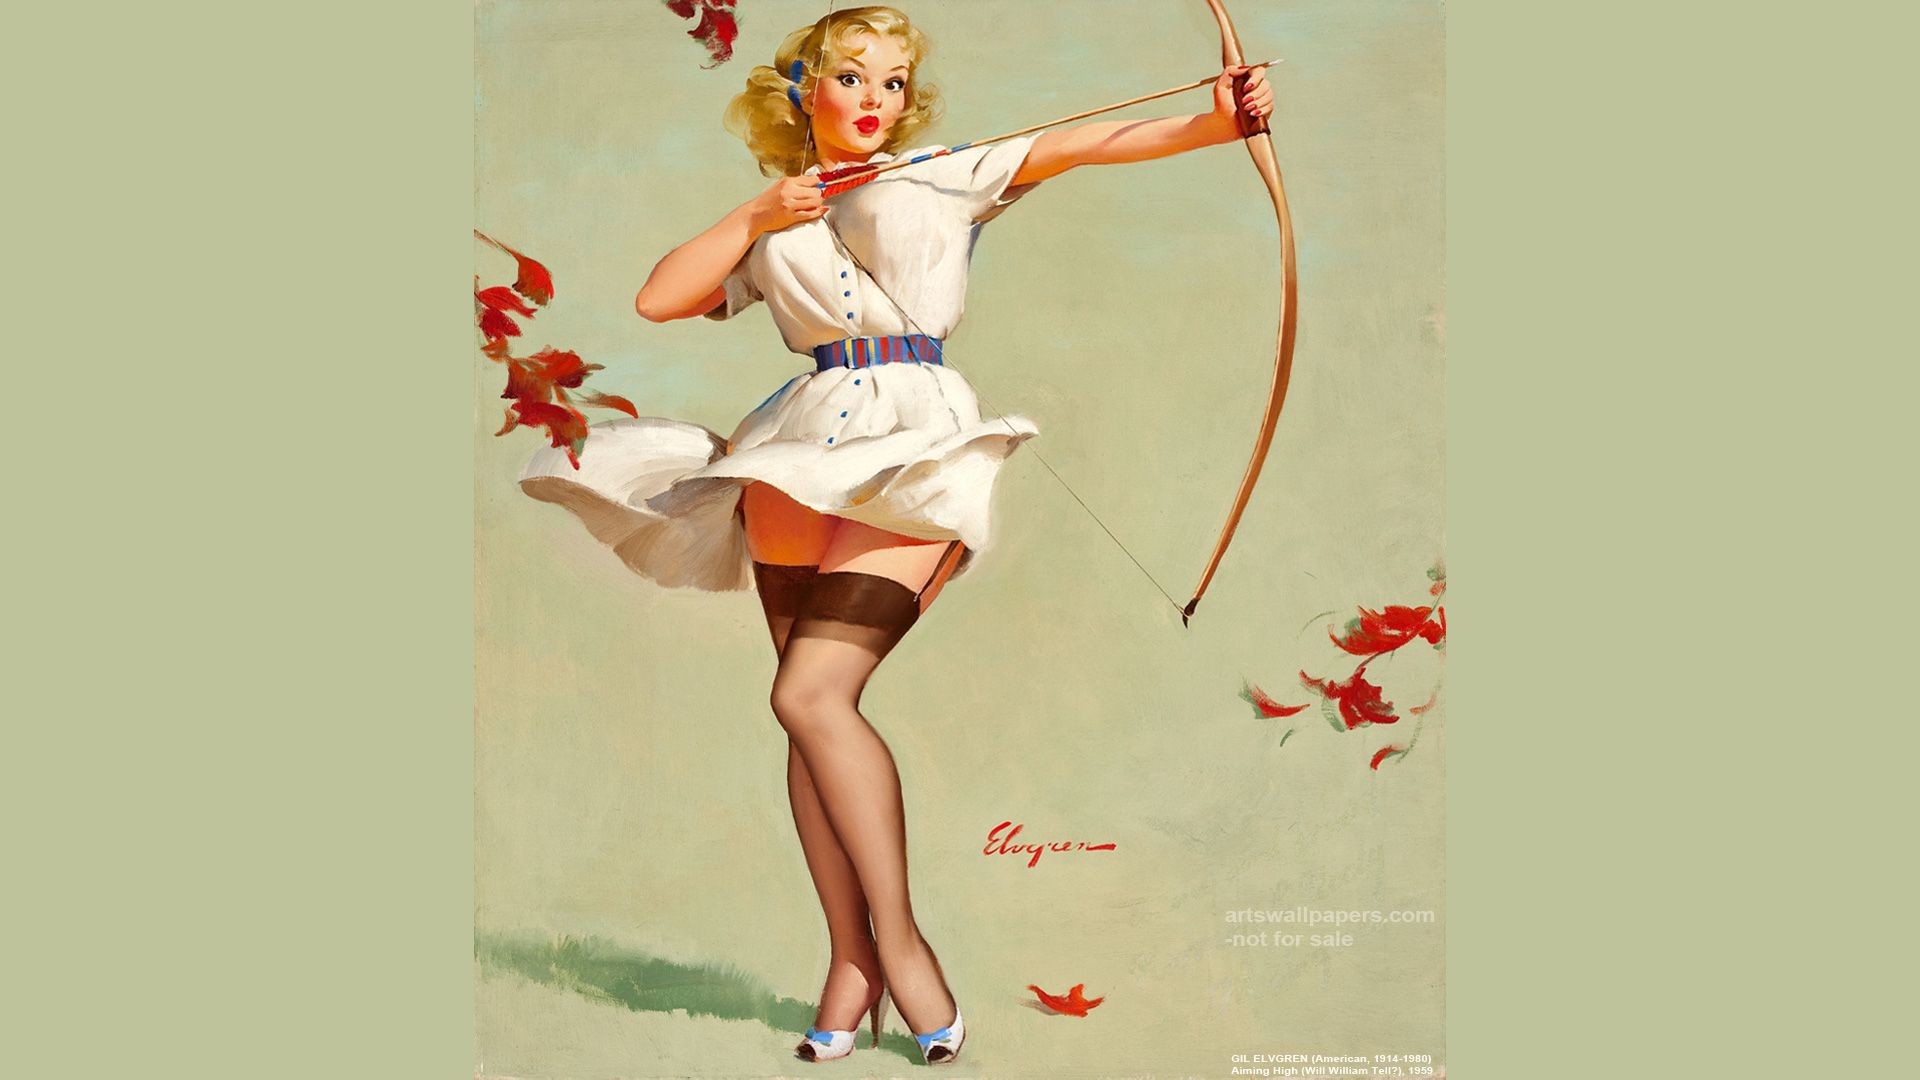 1920x1080 pin up art wallpaper | Pin-Up Girl Wallpaper, Poster, Desktop Art,  Paintings, Fine Art